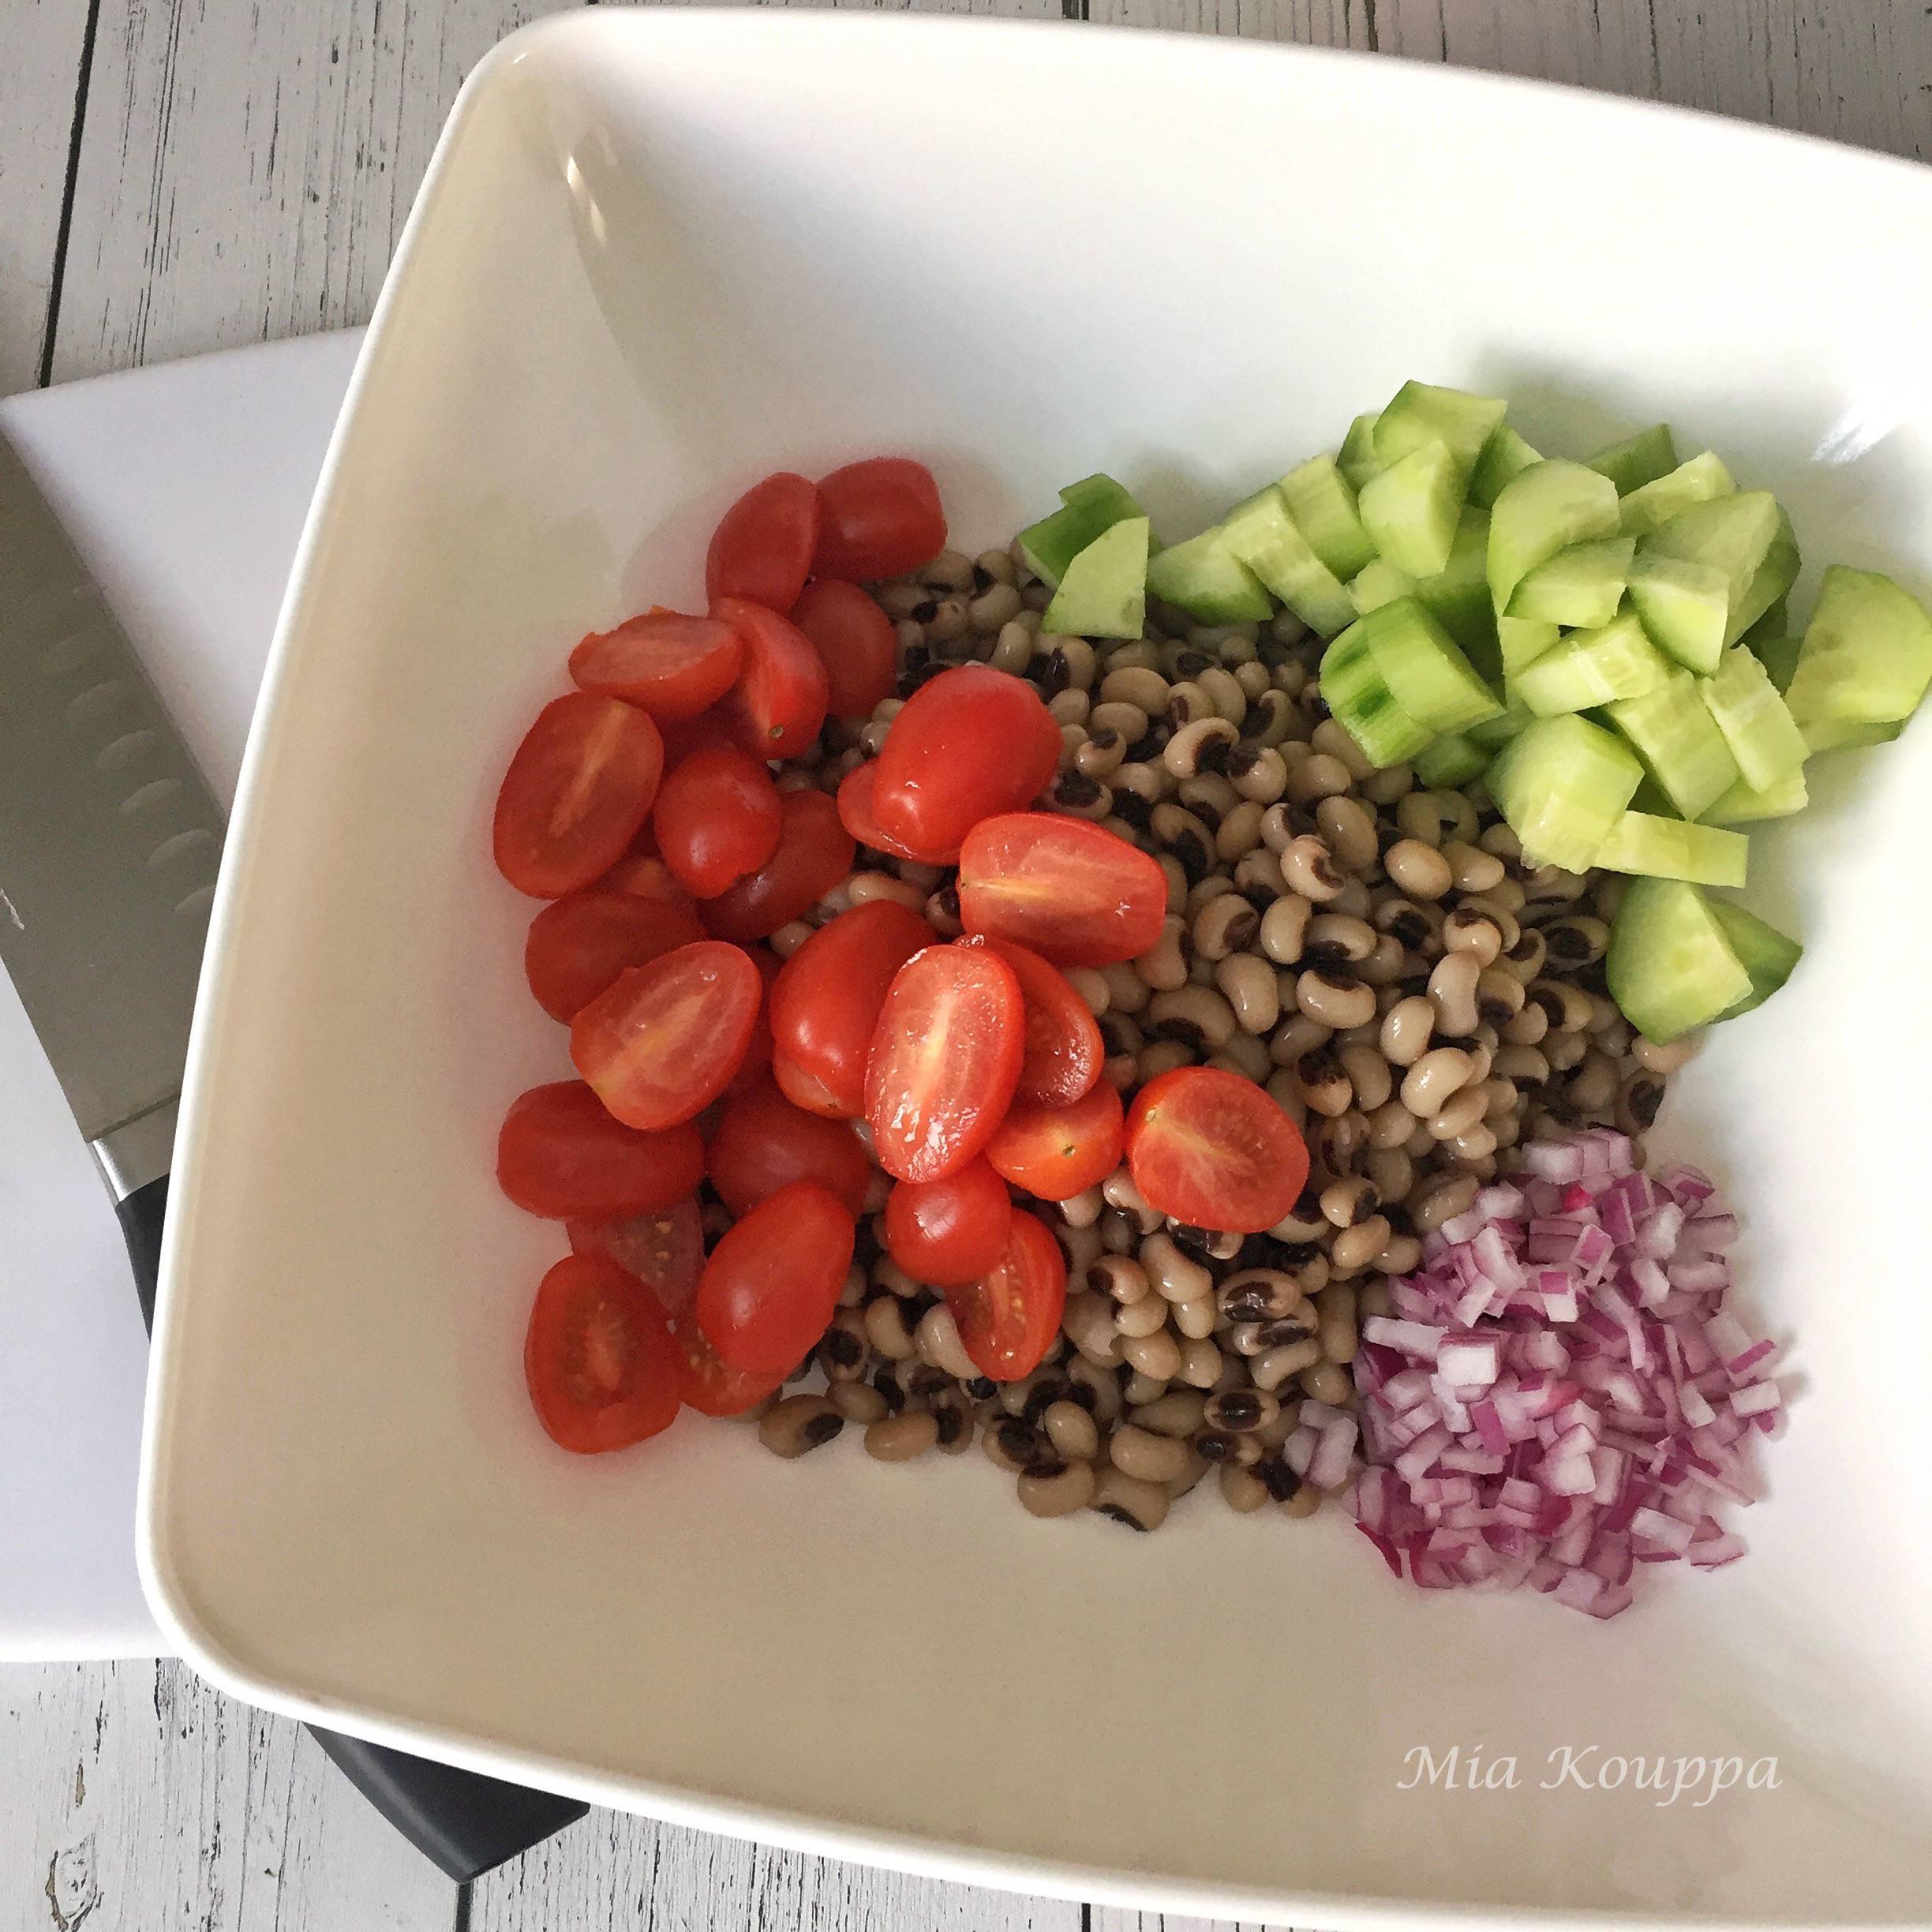 Black-eyed pea salad